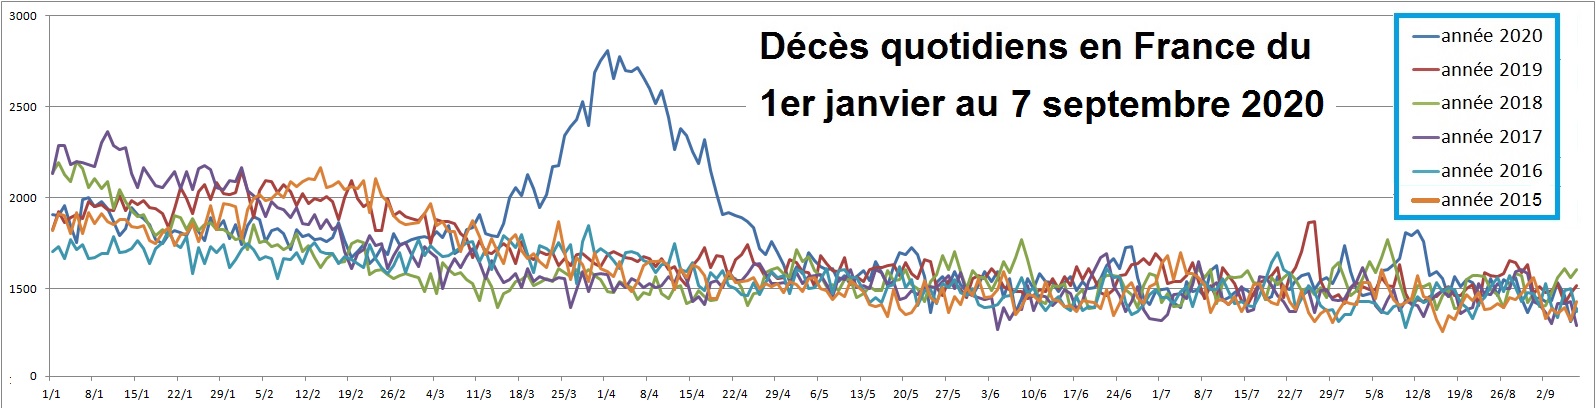 INSEE Mortalité journalières comparées janvier au 7 septembre